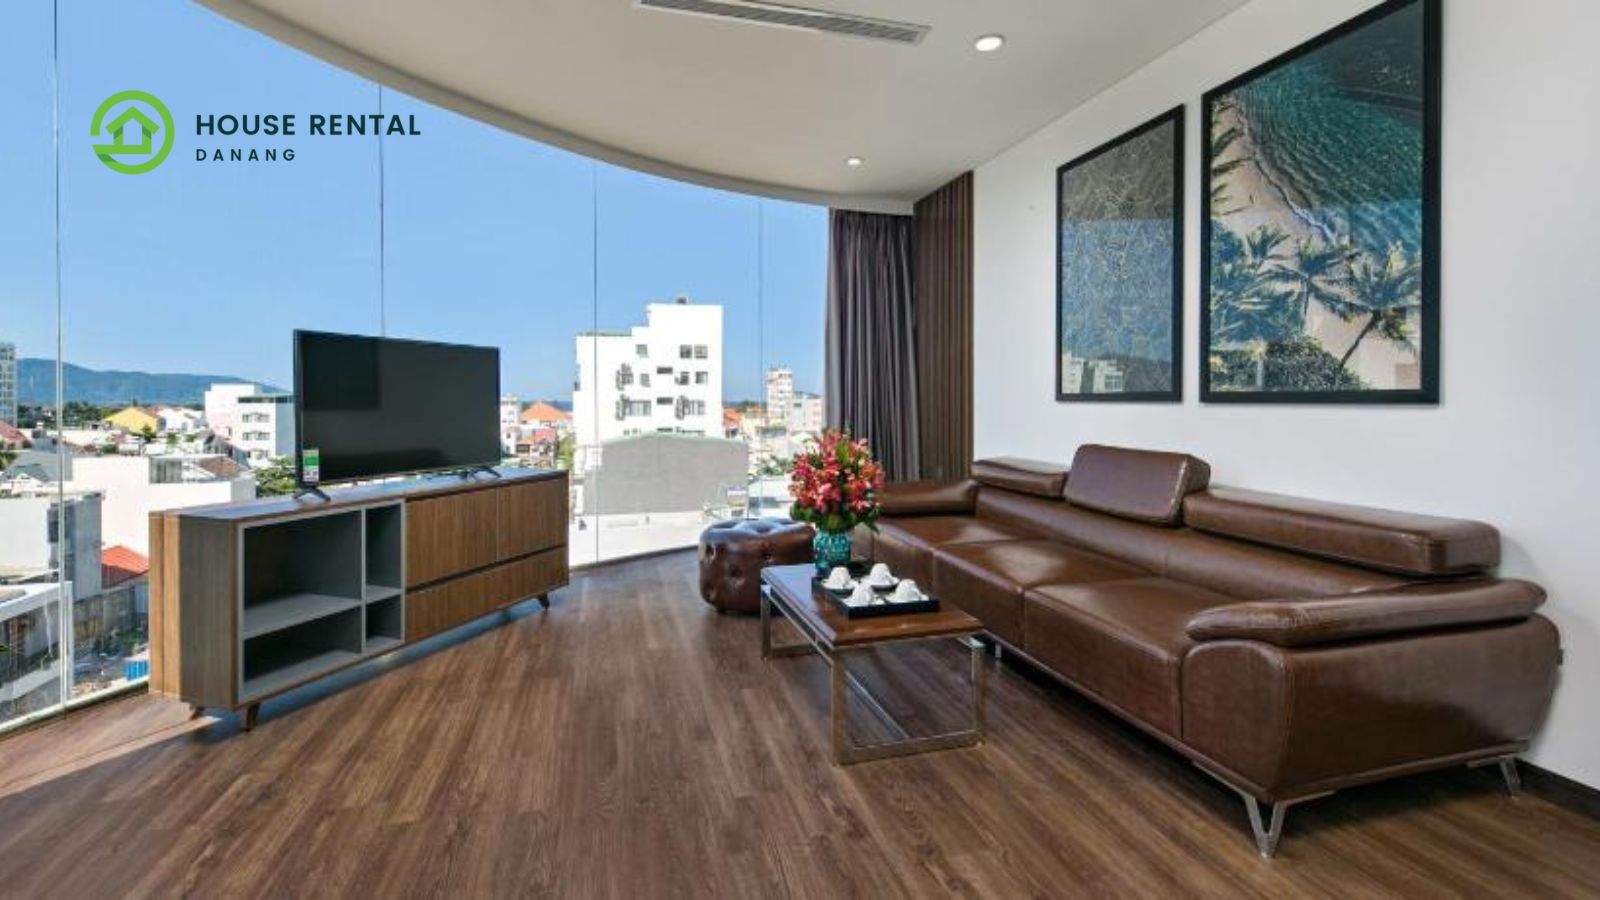 Meliora Hotel & Apartment